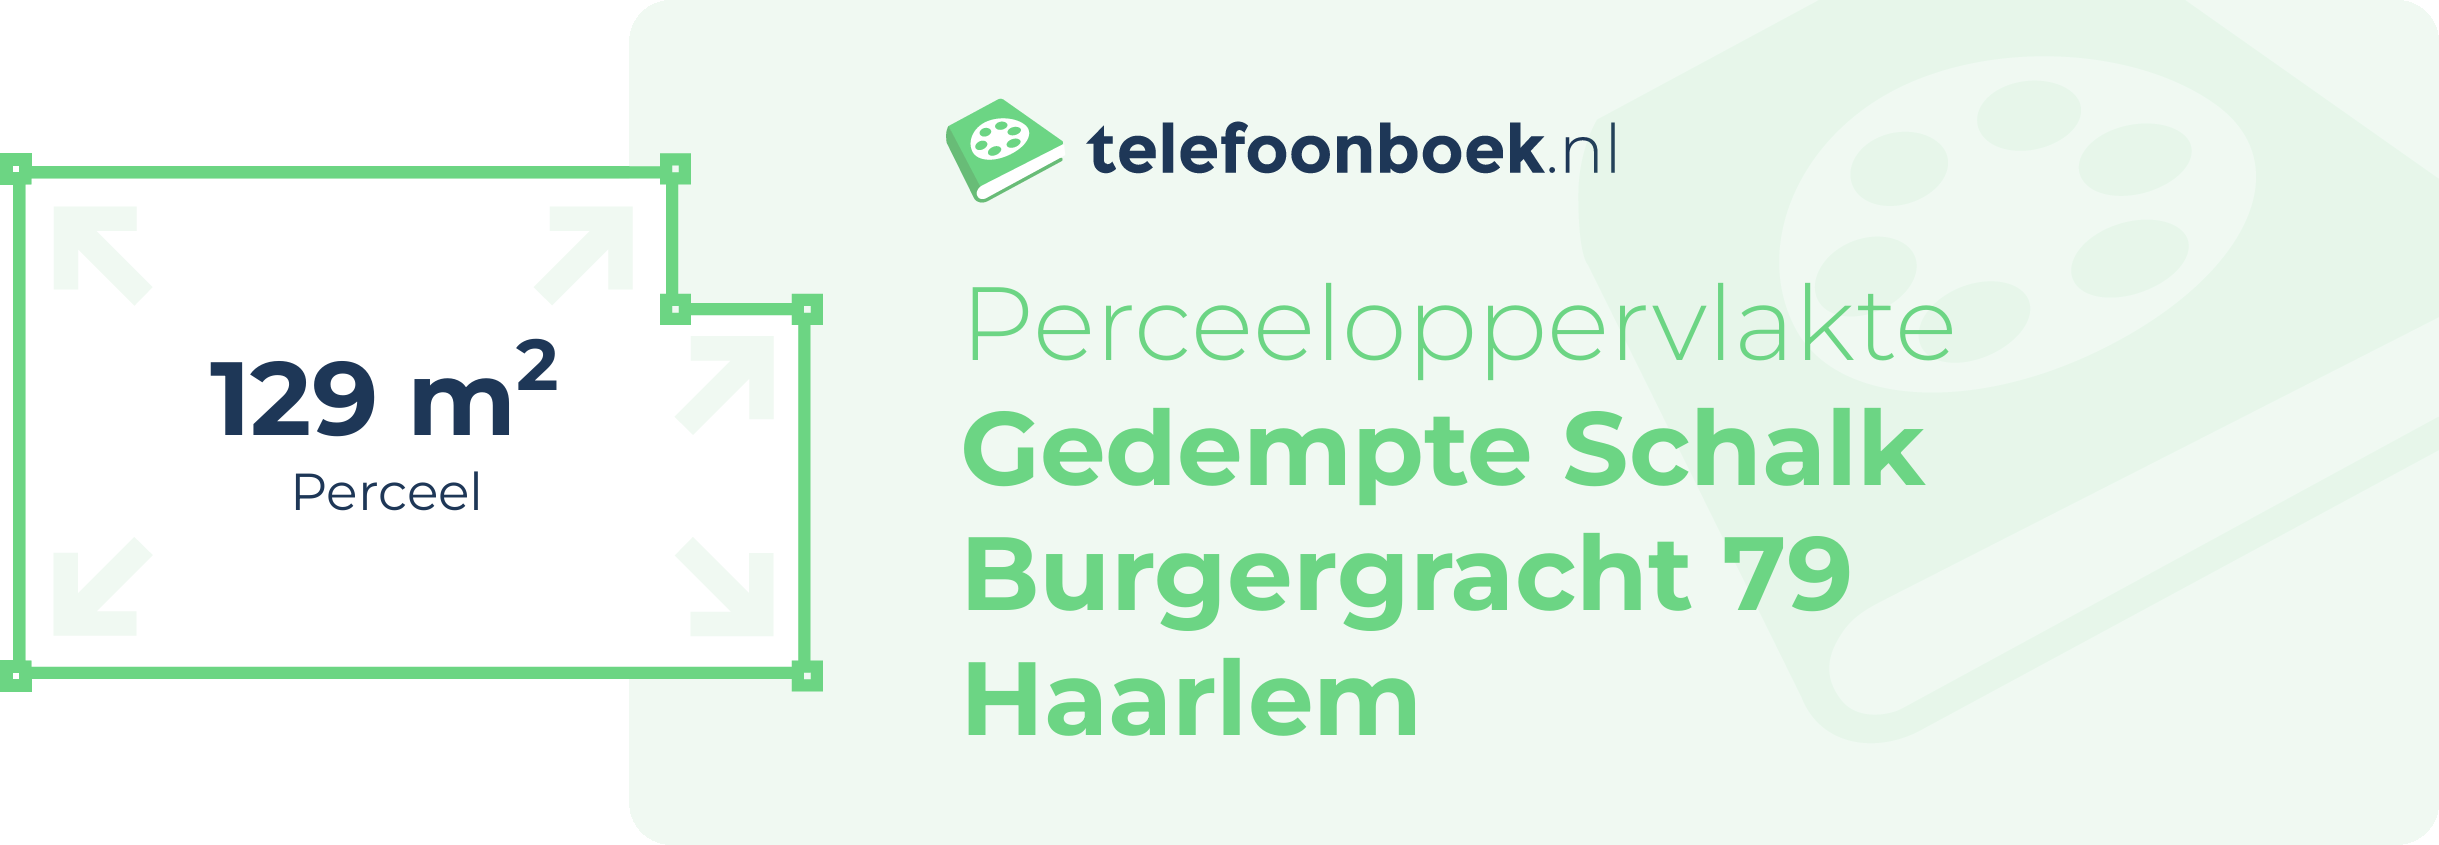 Perceeloppervlakte Gedempte Schalk Burgergracht 79 Haarlem